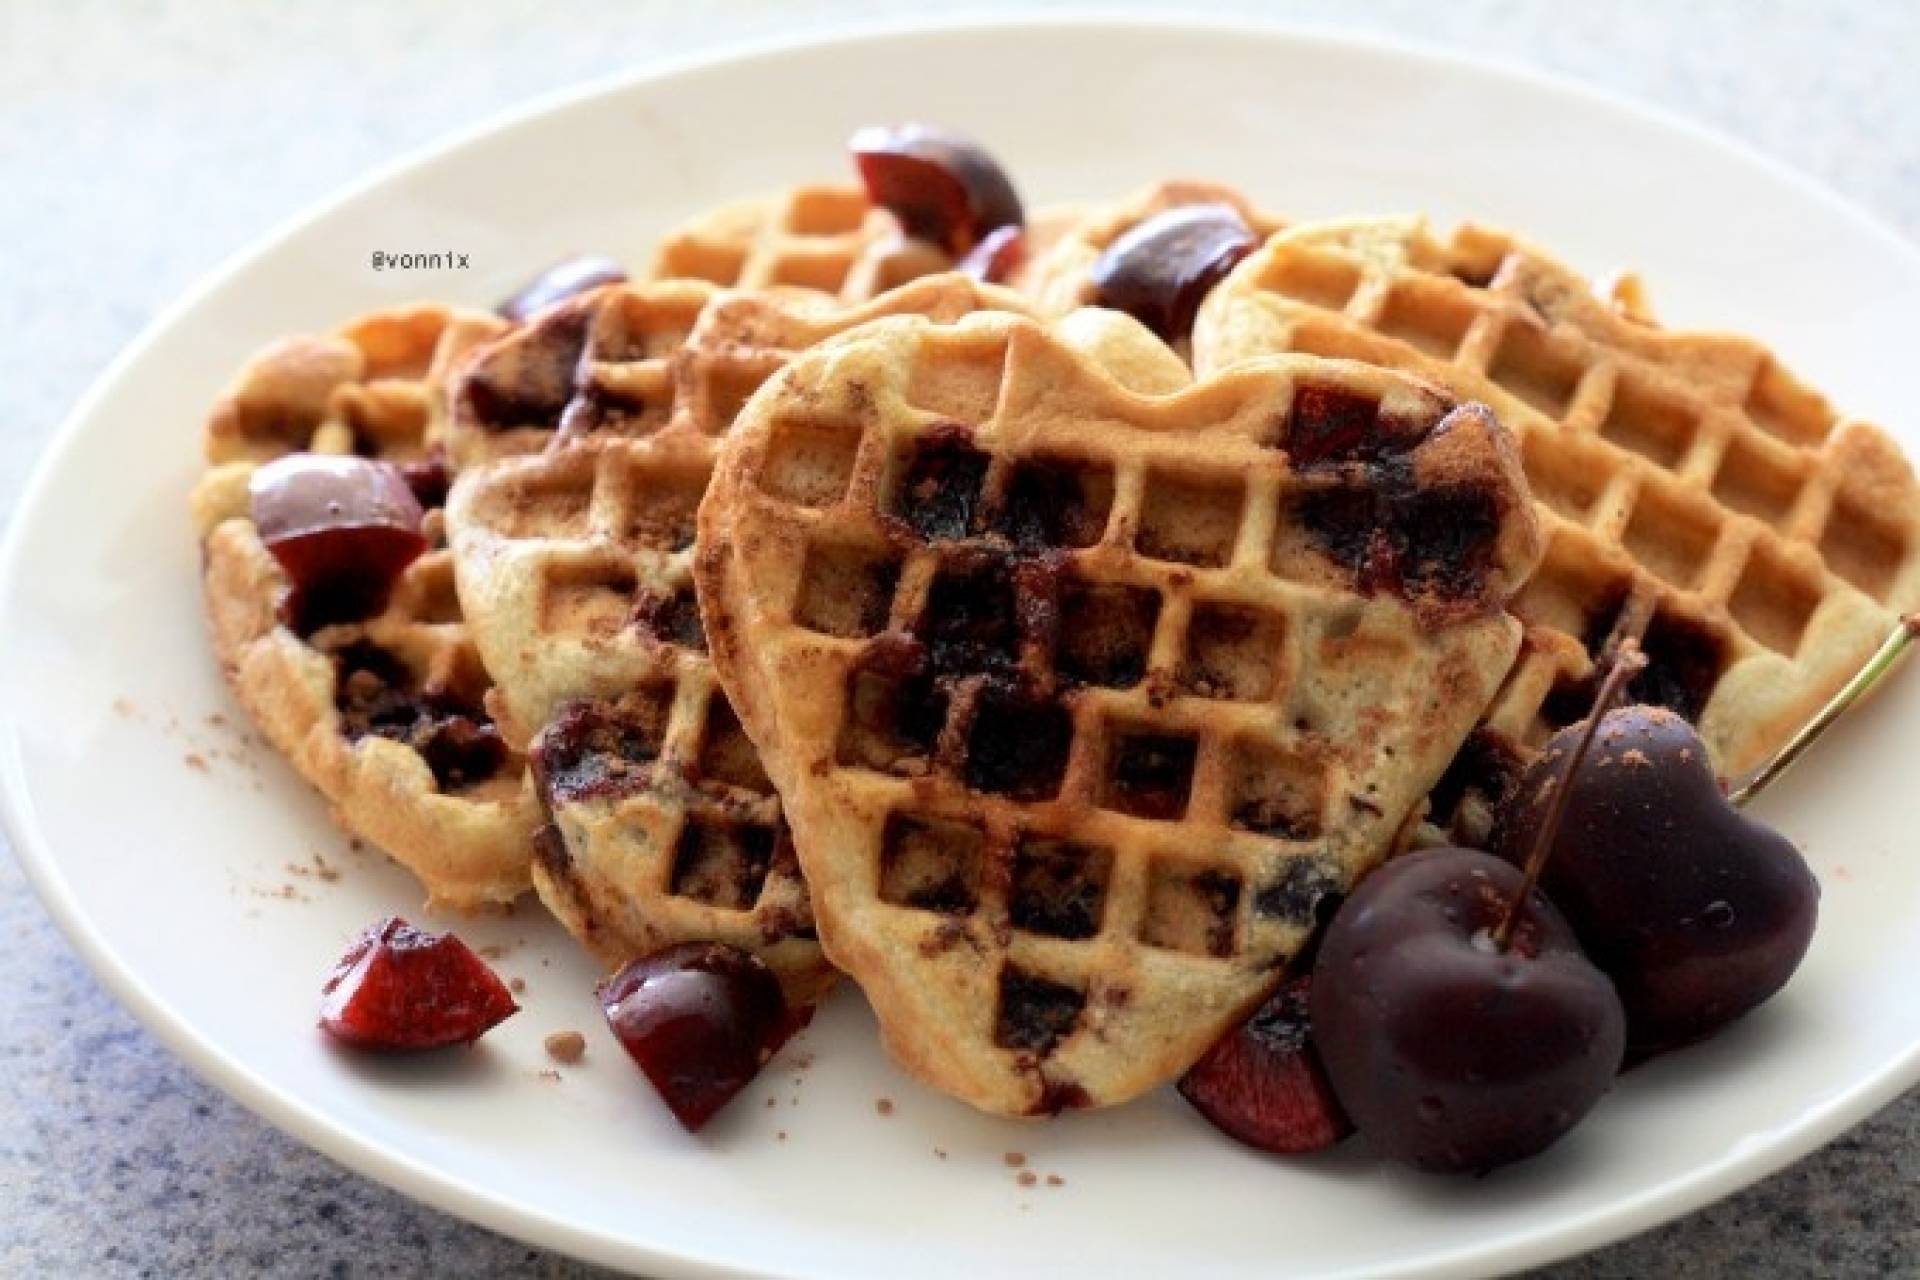 Cherry waffles + side de maple syrup y frutas